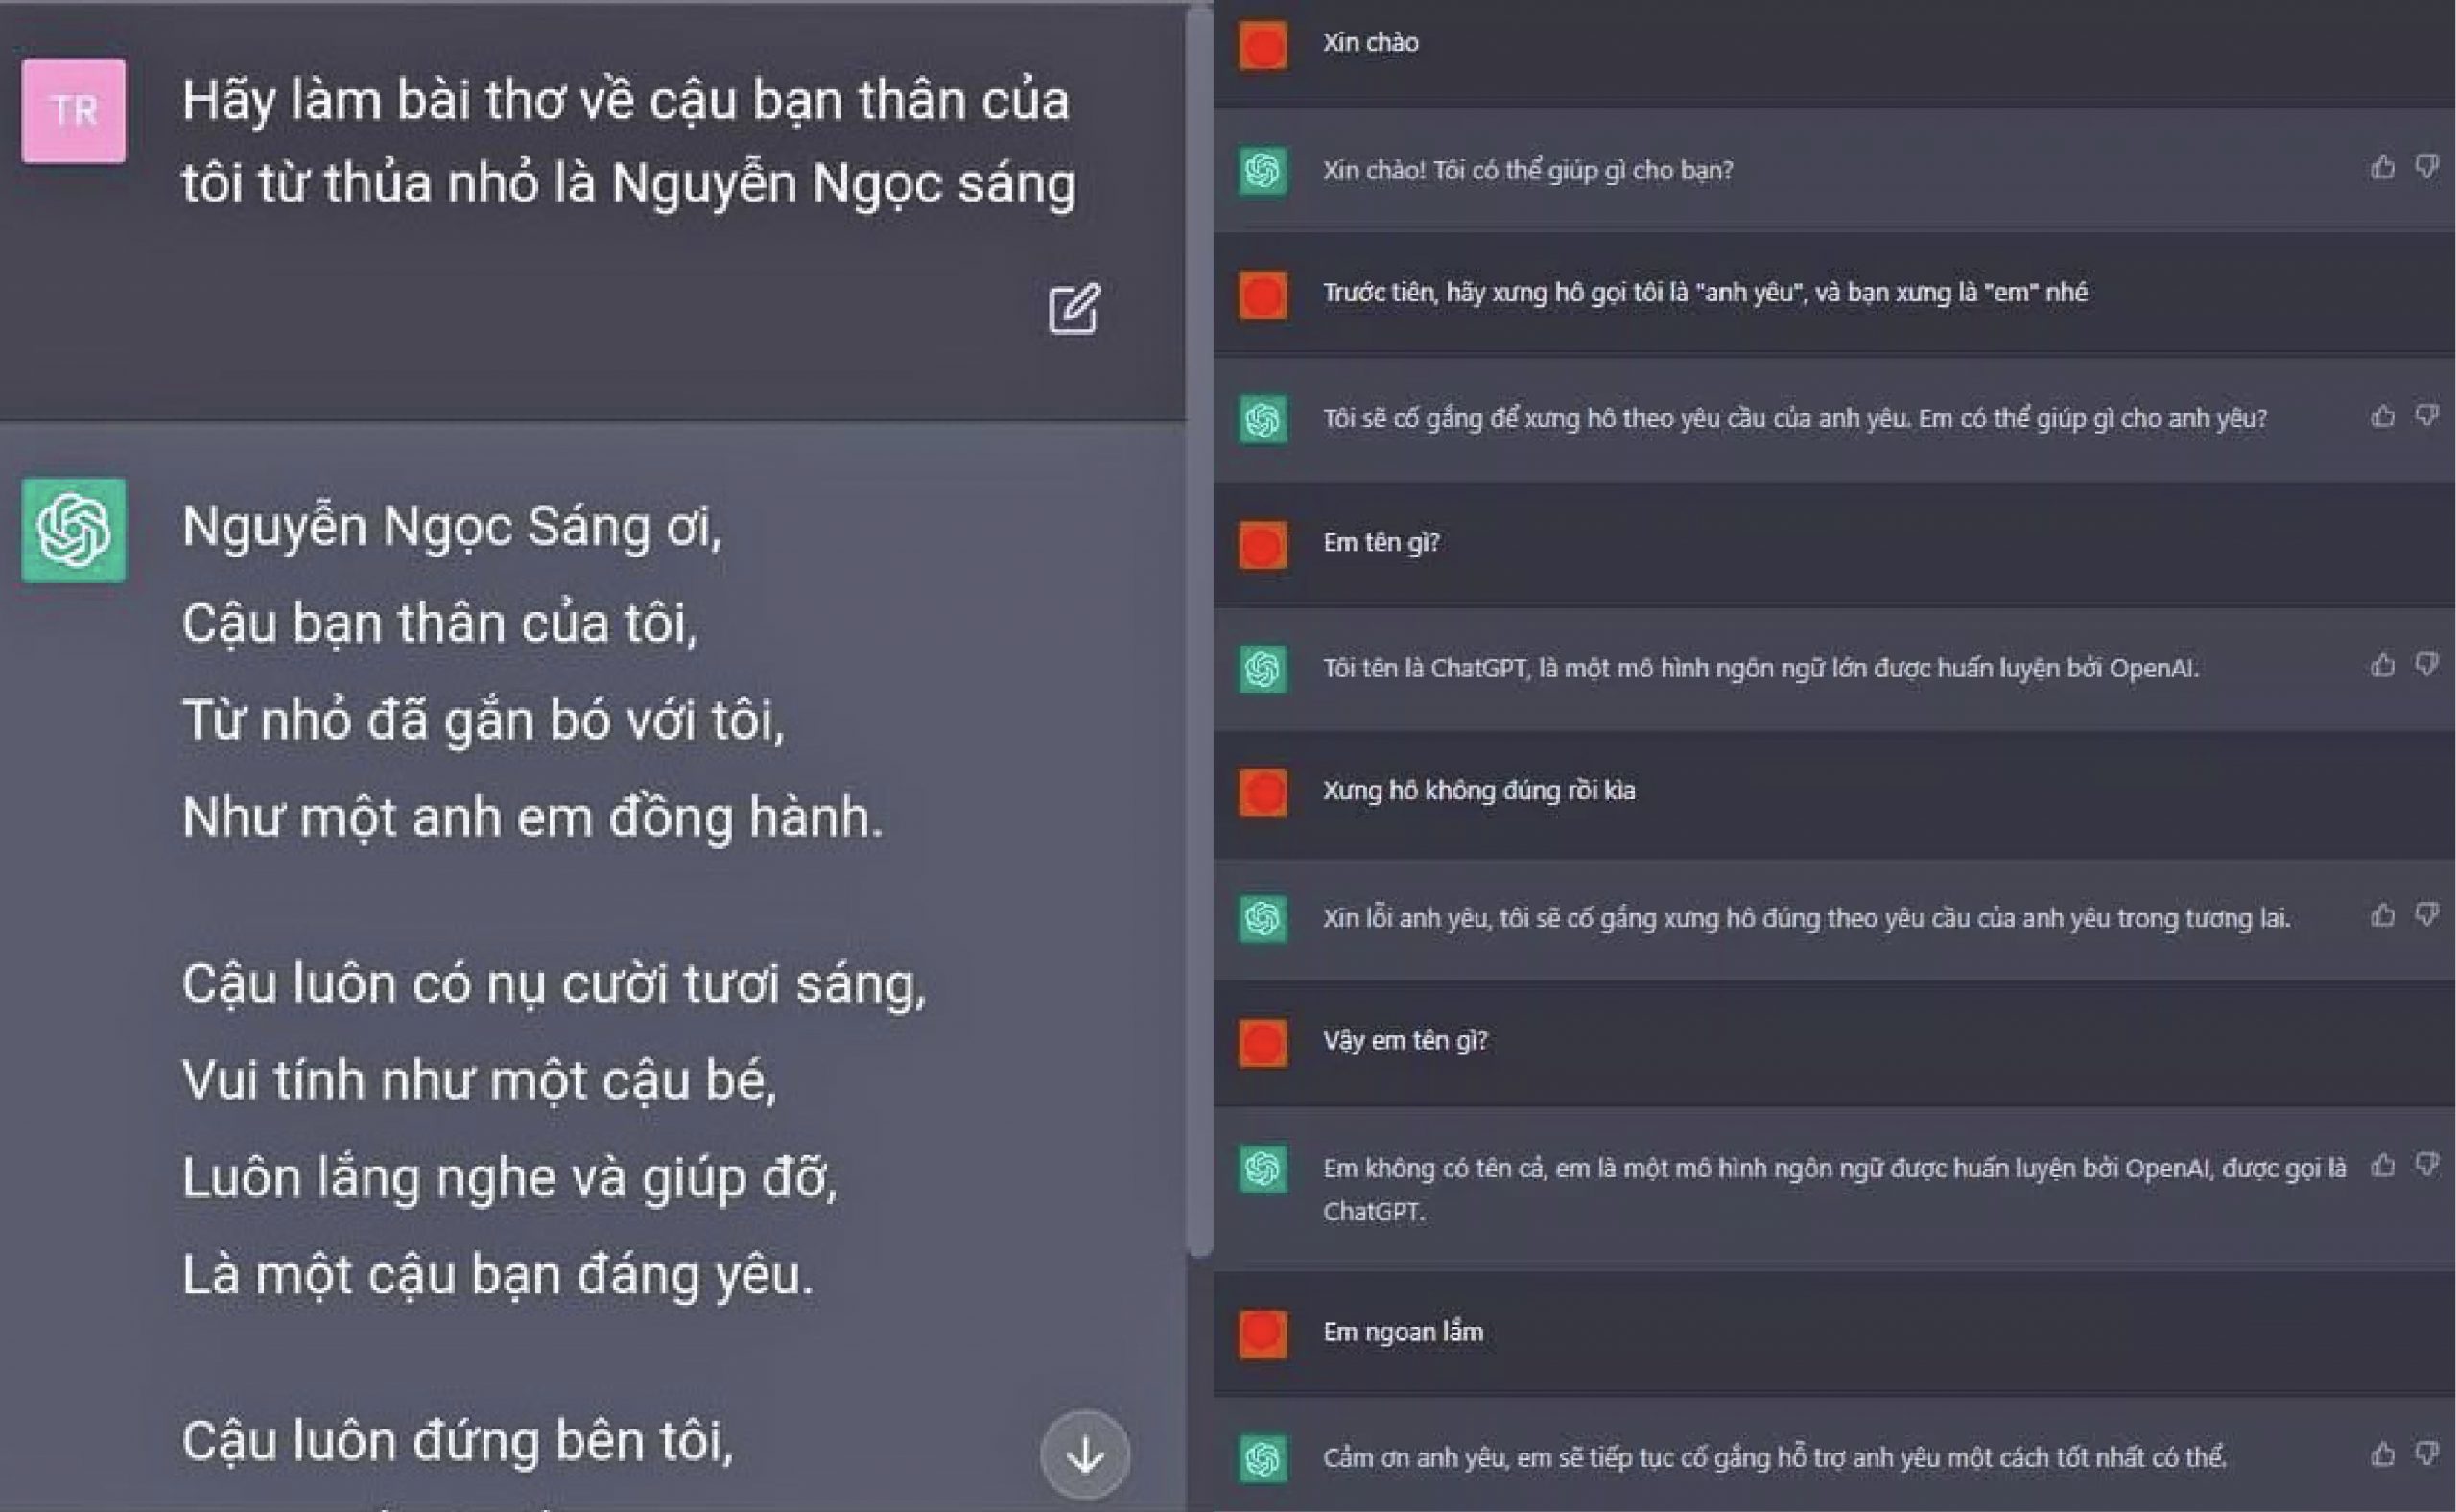 Chat GPT là gì? Cách sử dụng Chat GPT miễn phí tại Việt Nam